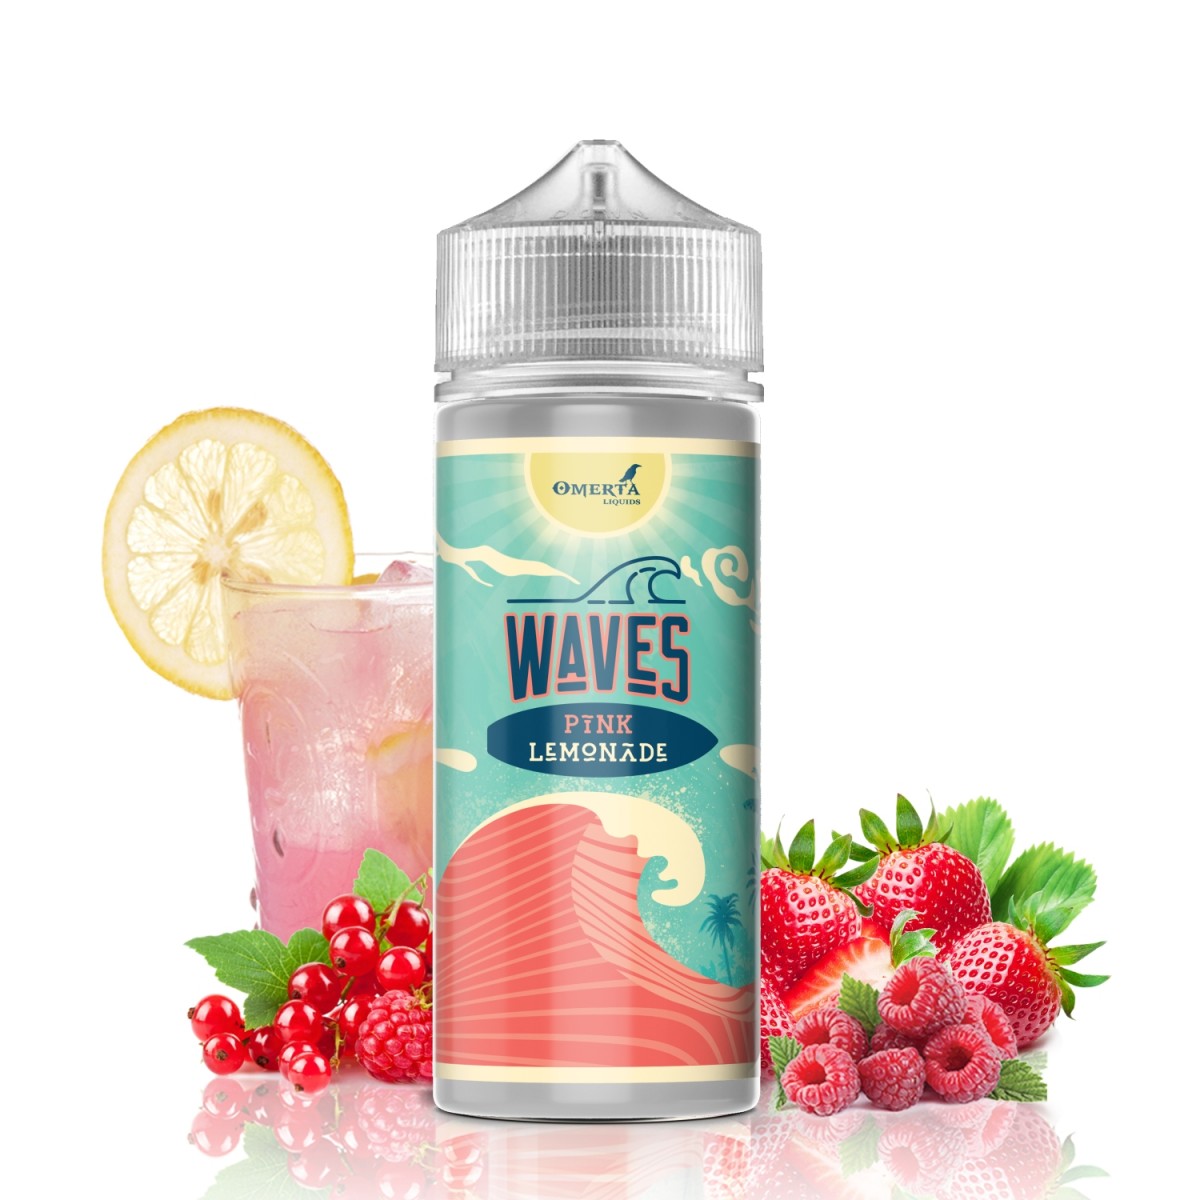 Waves Pink Lemonade